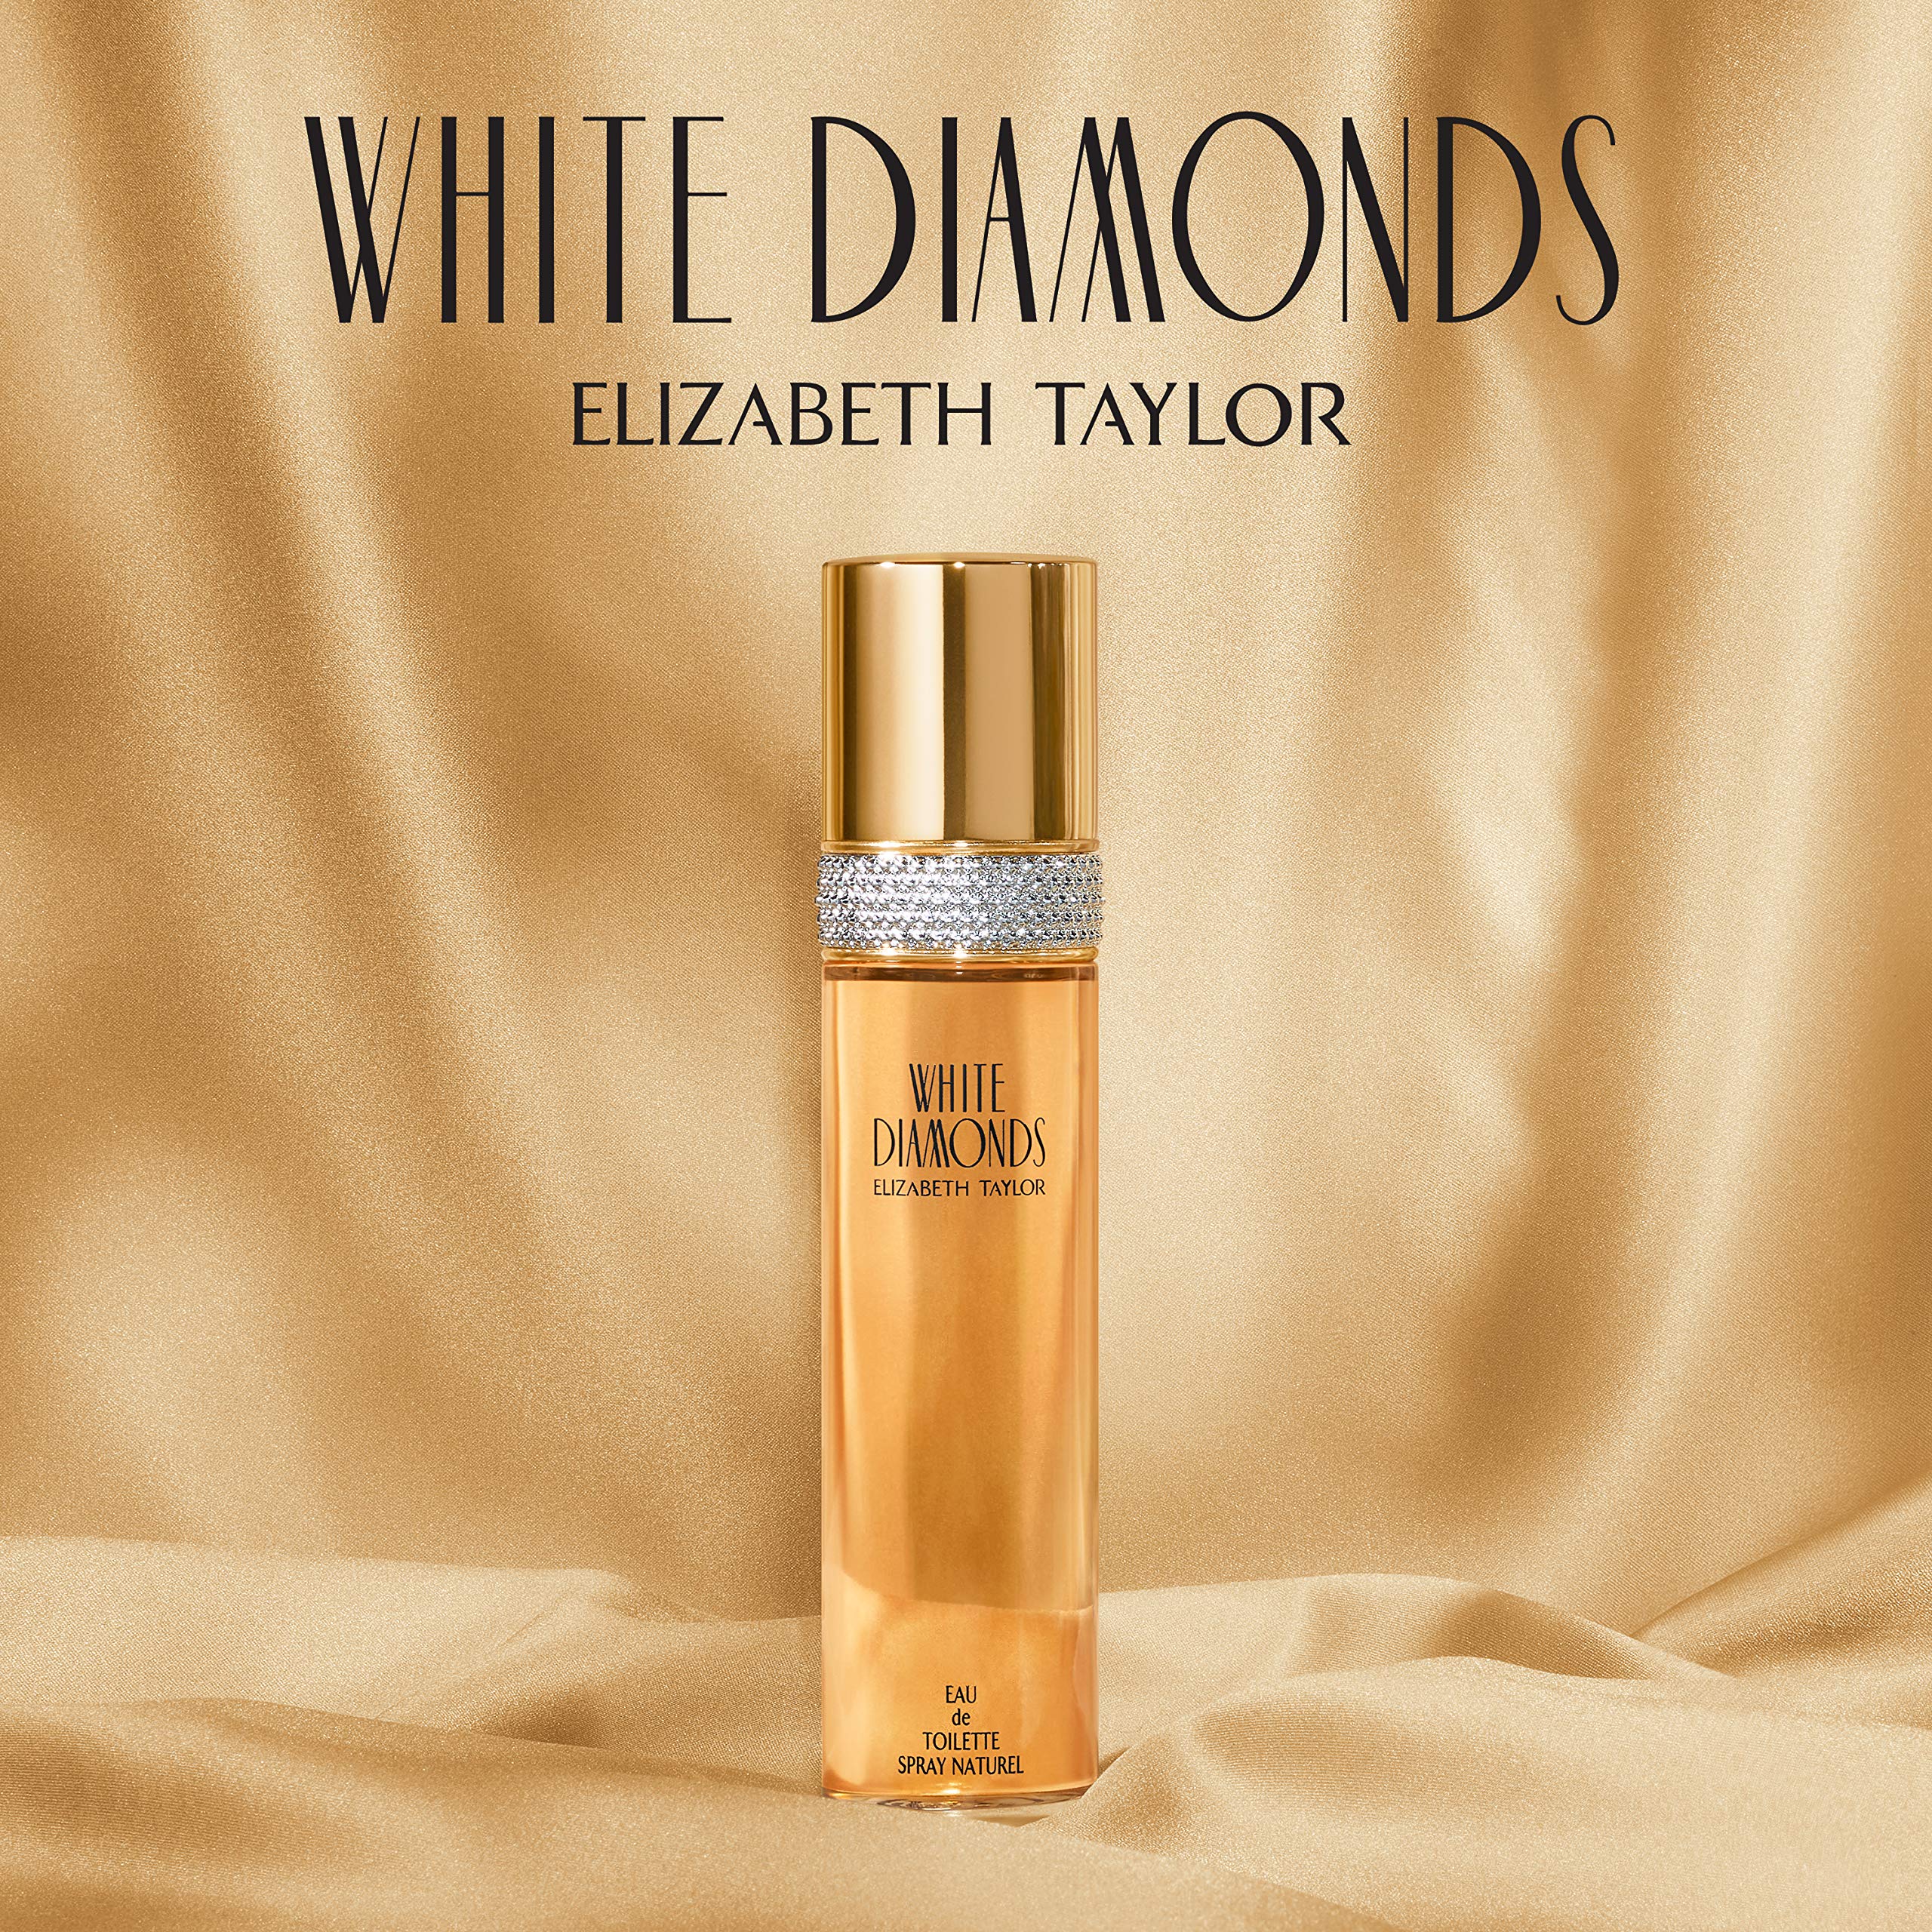 Elizabeth Taylor Elizabeth Taylor White Diamonds Women's Fragrance 3 Piece Gift Set, 1.0 Fl. Oz. Eau De Toilette, 3 Count